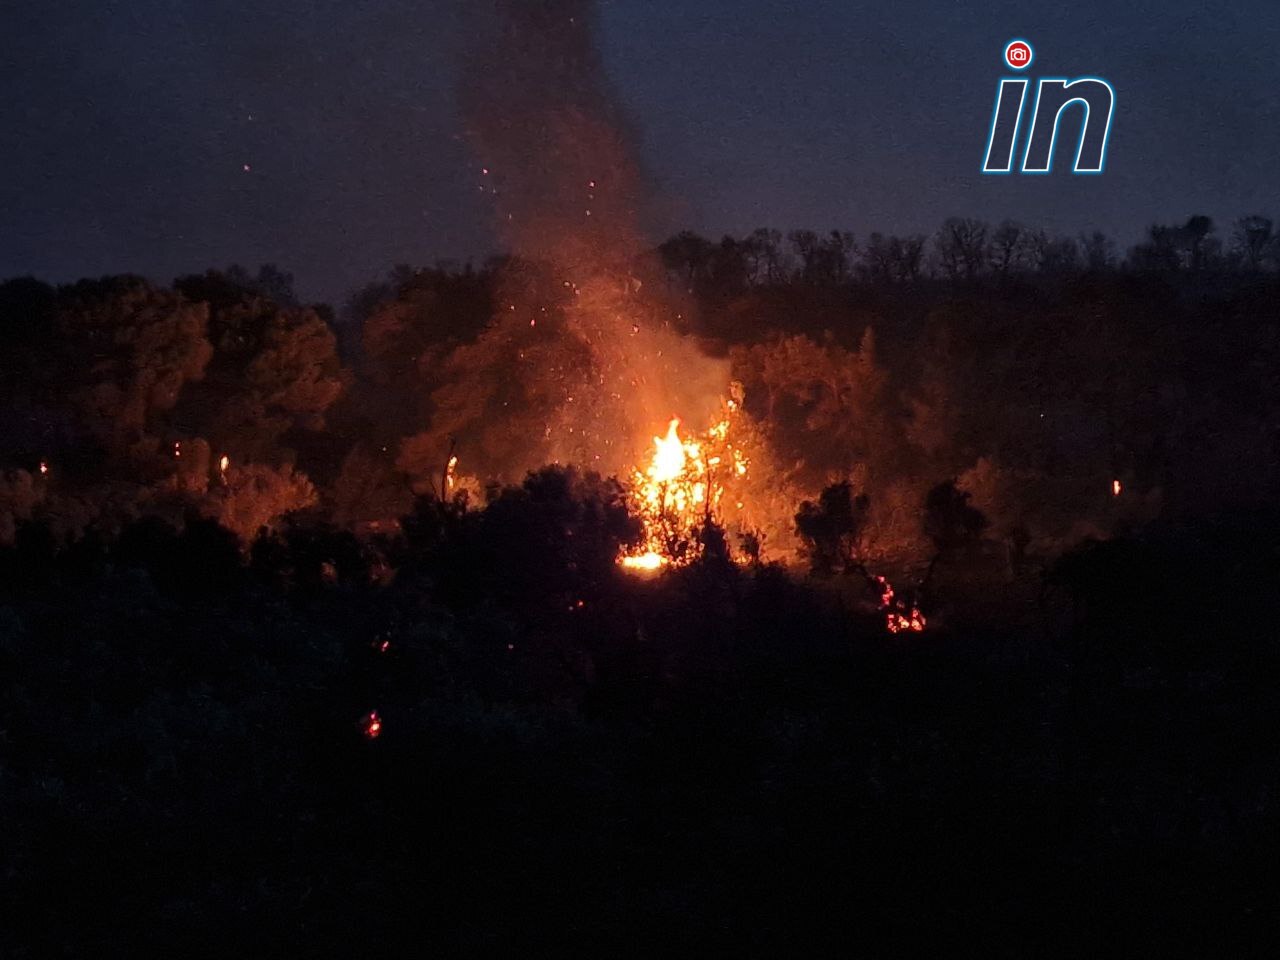 Live οι εξελίξεις για τις φωτιές: Ανεξέλεγκτη η φωτιά στα Δερβενοχώρια - Έφτασε στη Μάνδρα - Εκκενώνονται οικισμοί - Καίγονται σπίτια